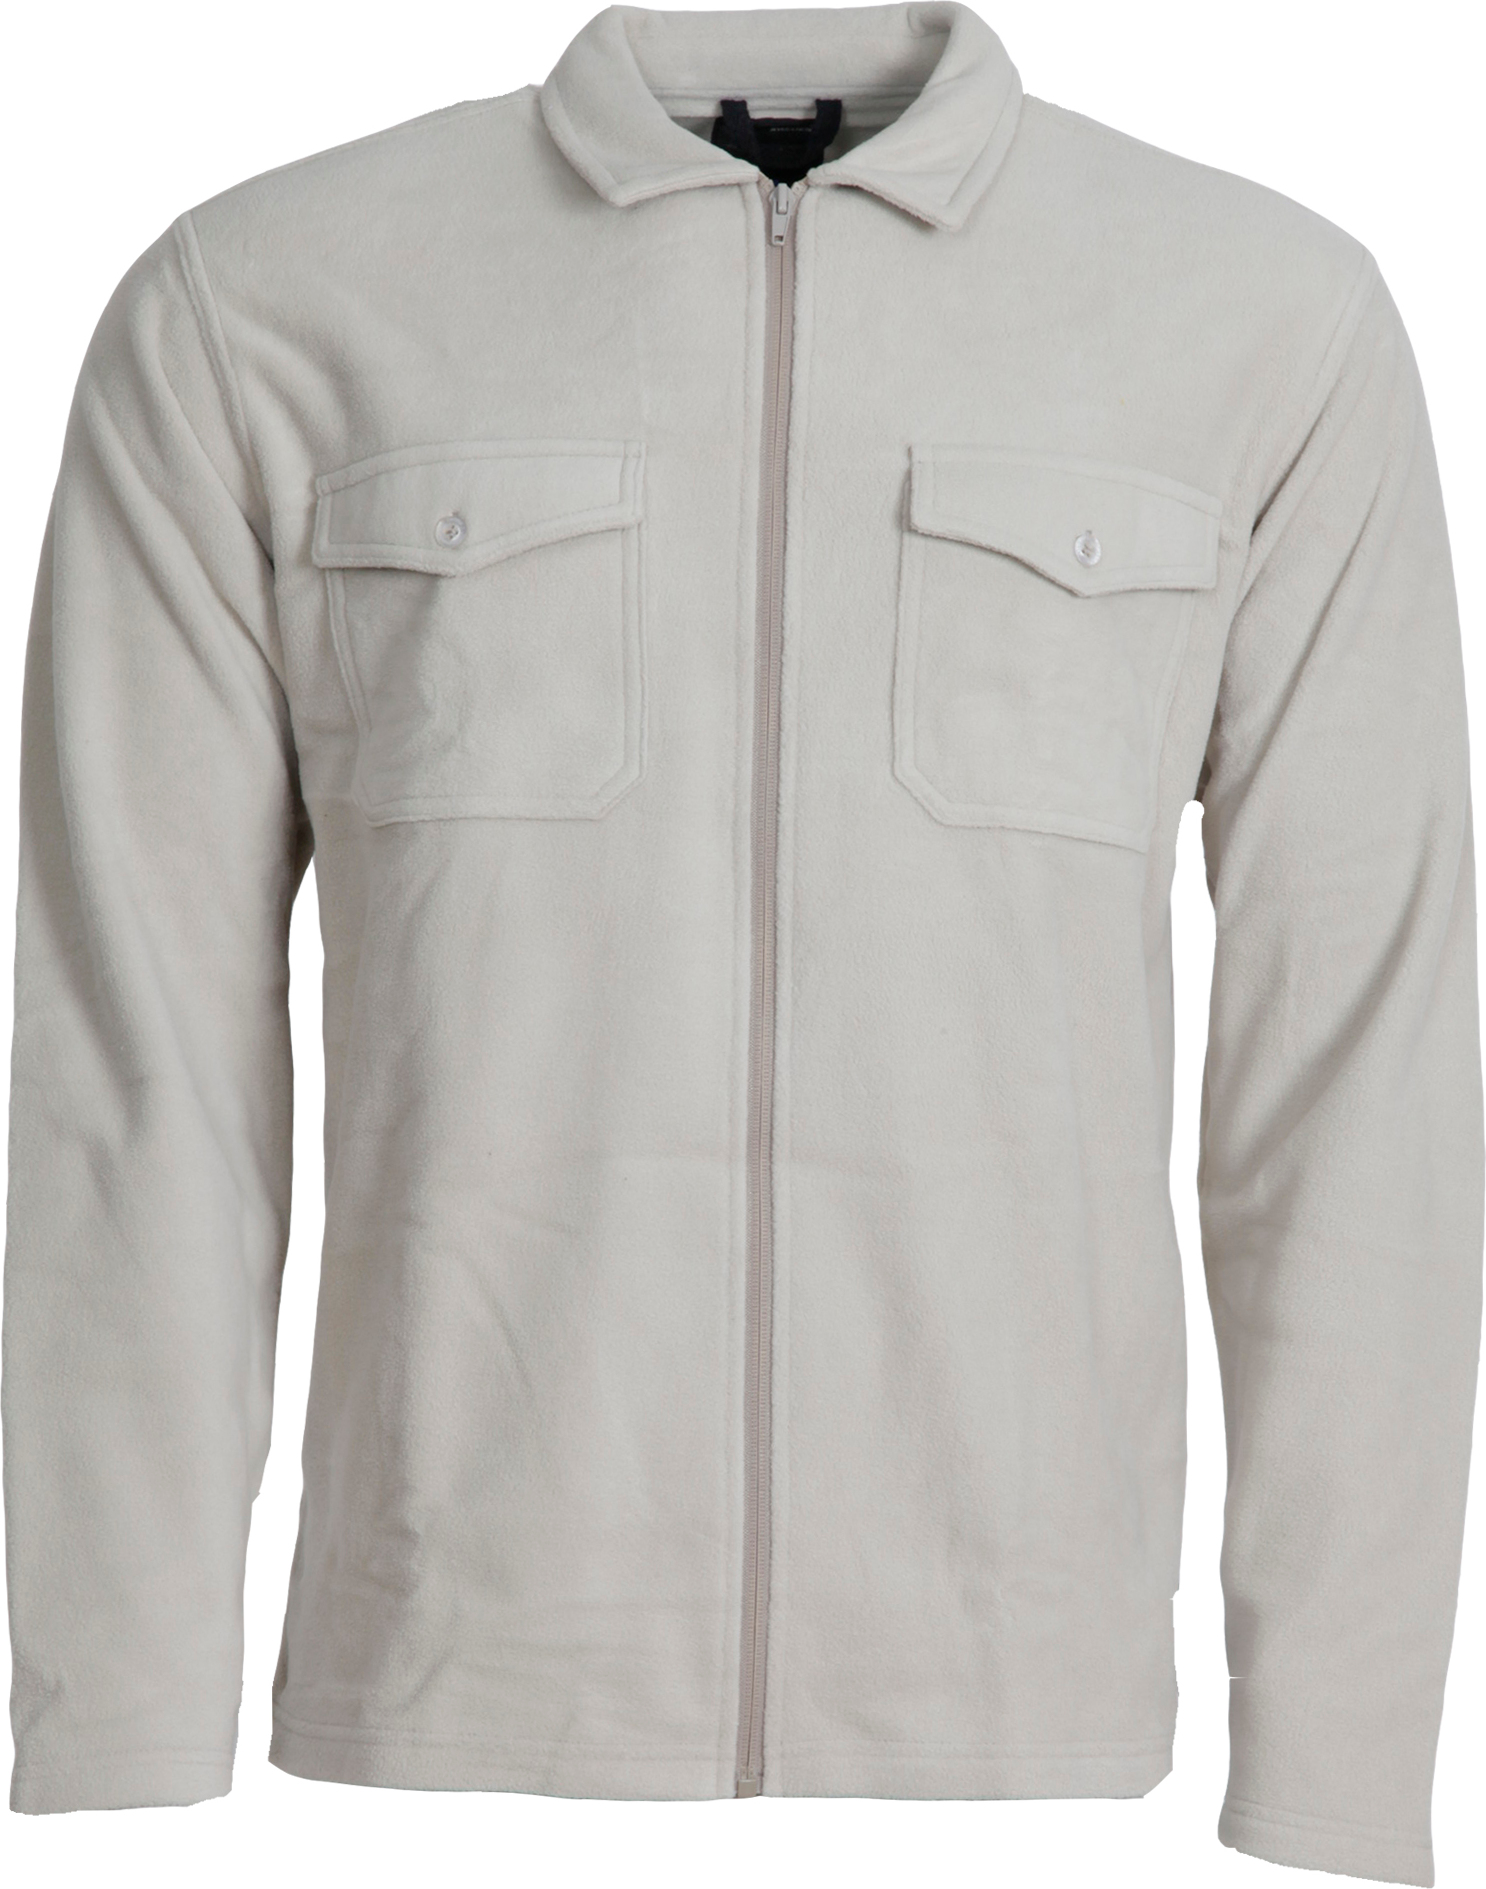 Dobsom Men's Pescara Fleece Shirt Khaki XXXL, Khaki